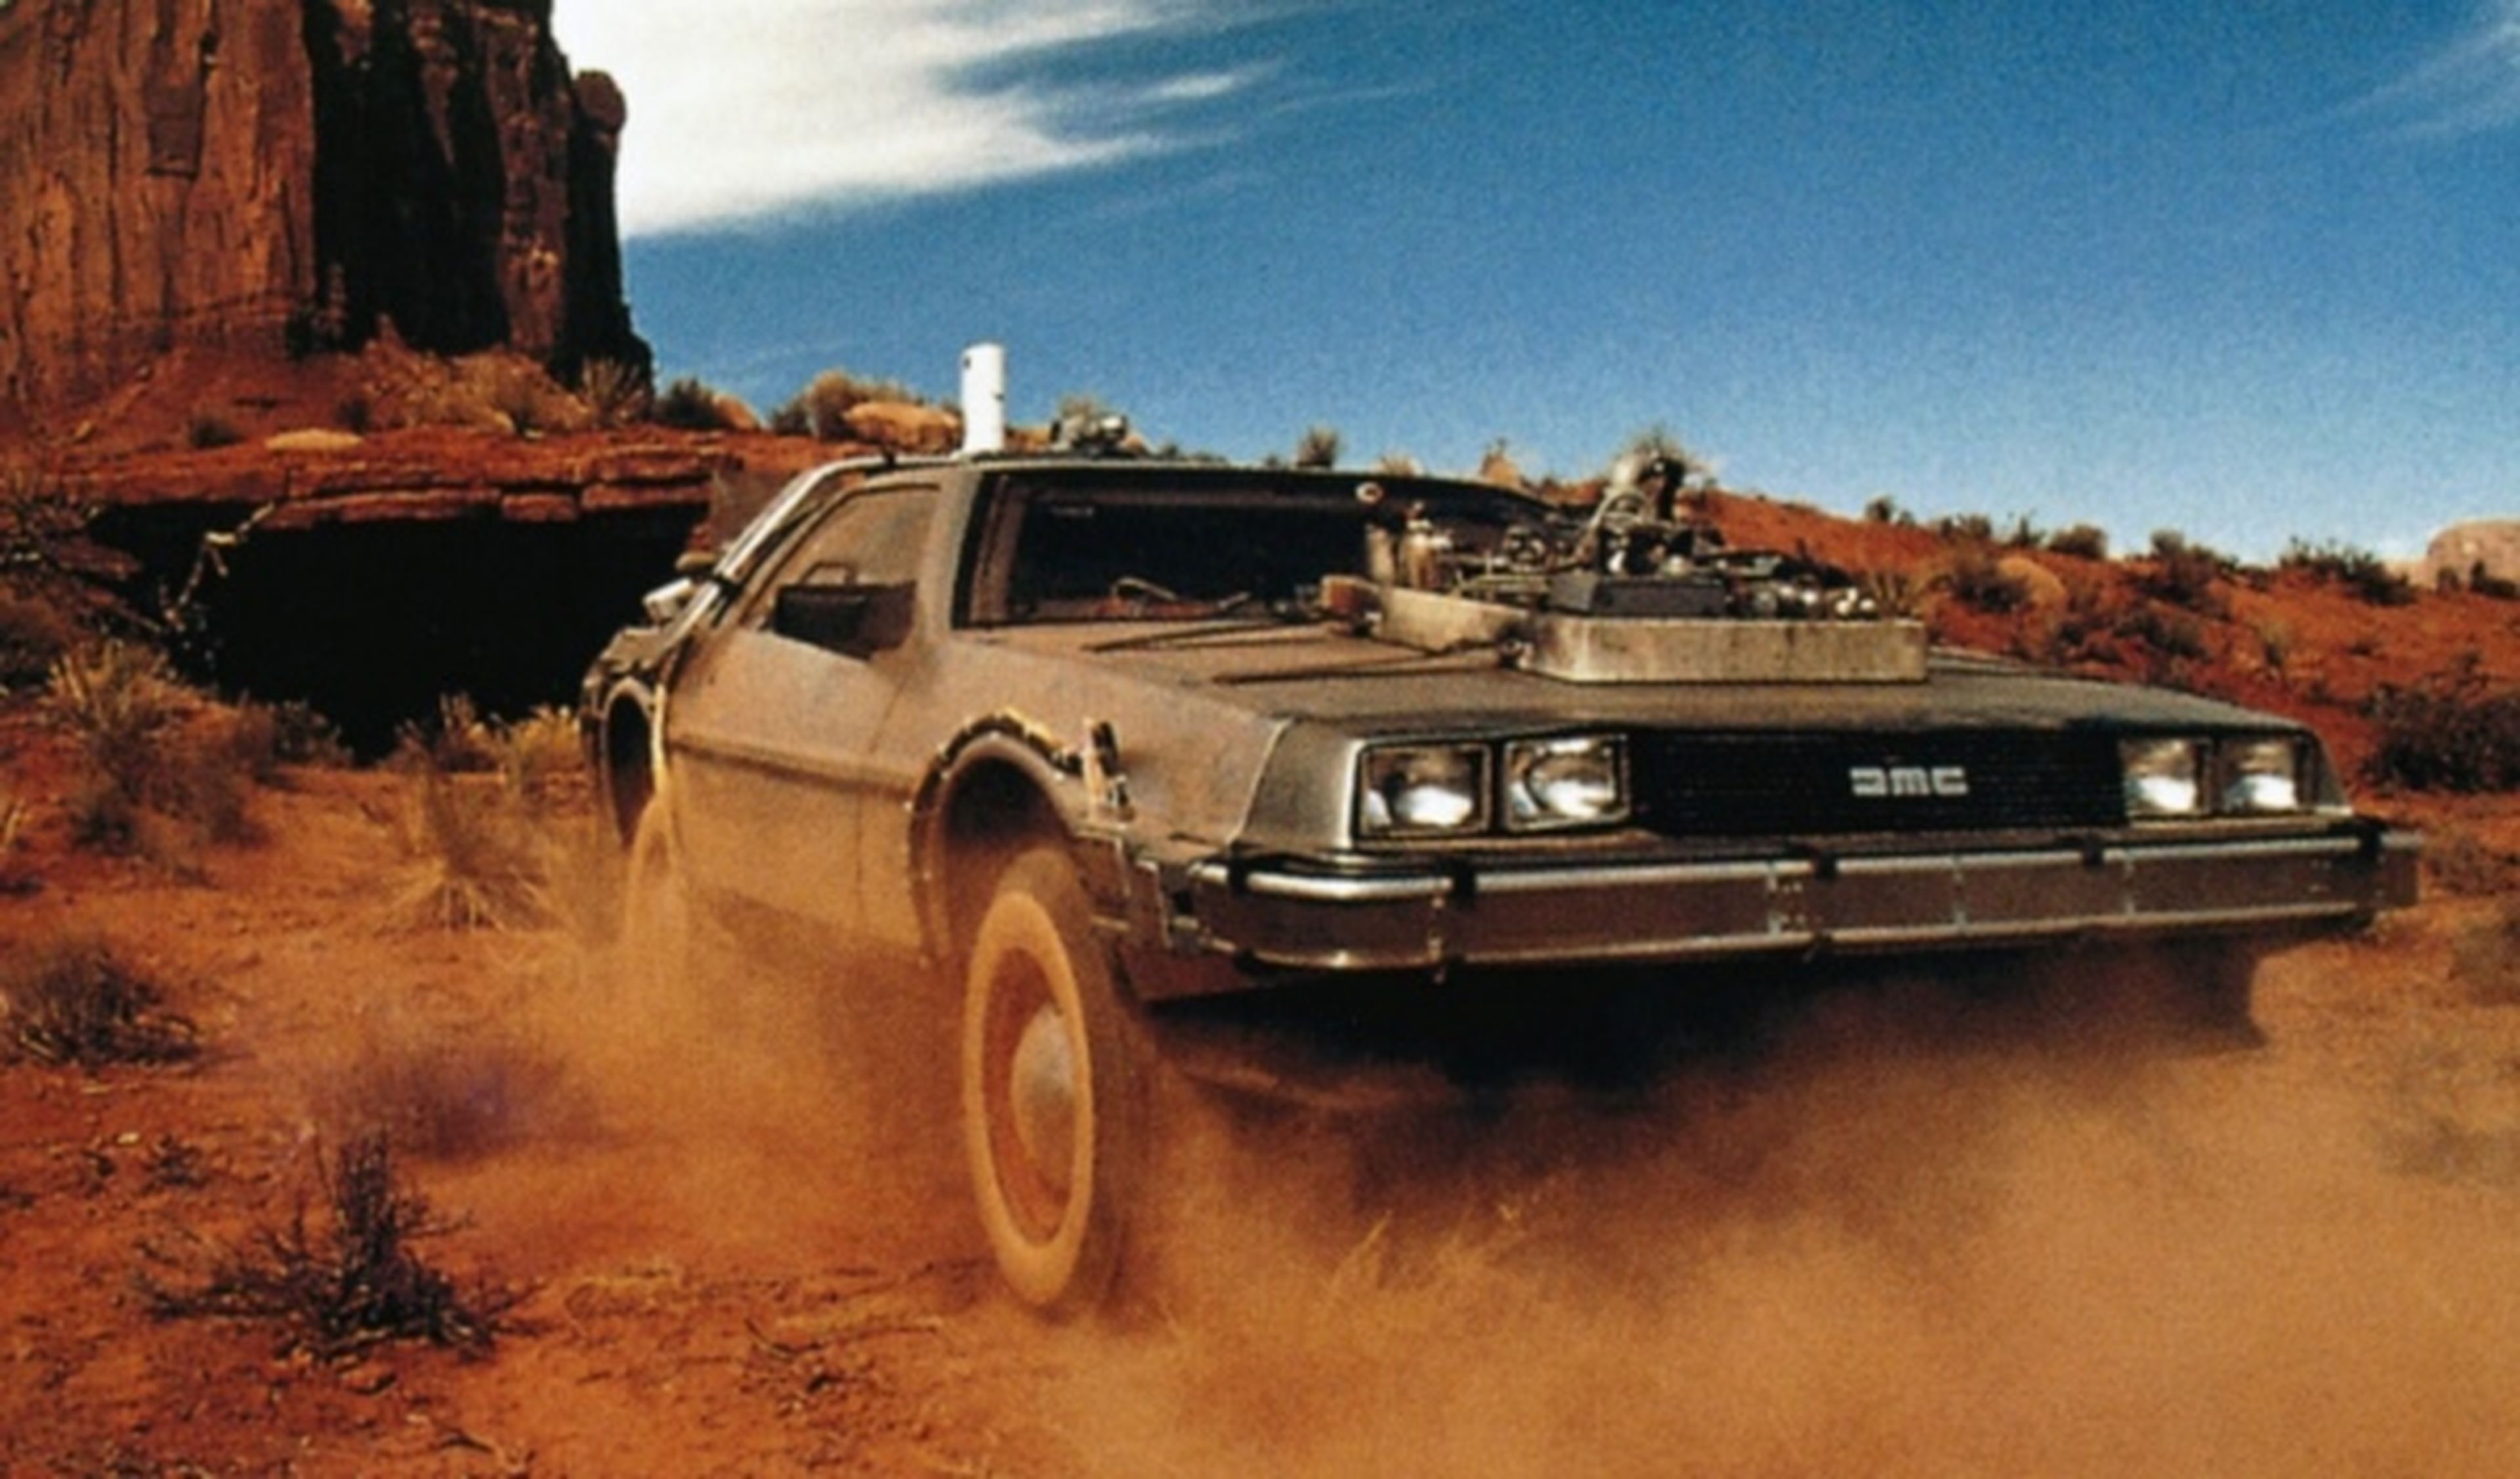 Sale a subasta el DeLorean de 'Regreso al futuro III'